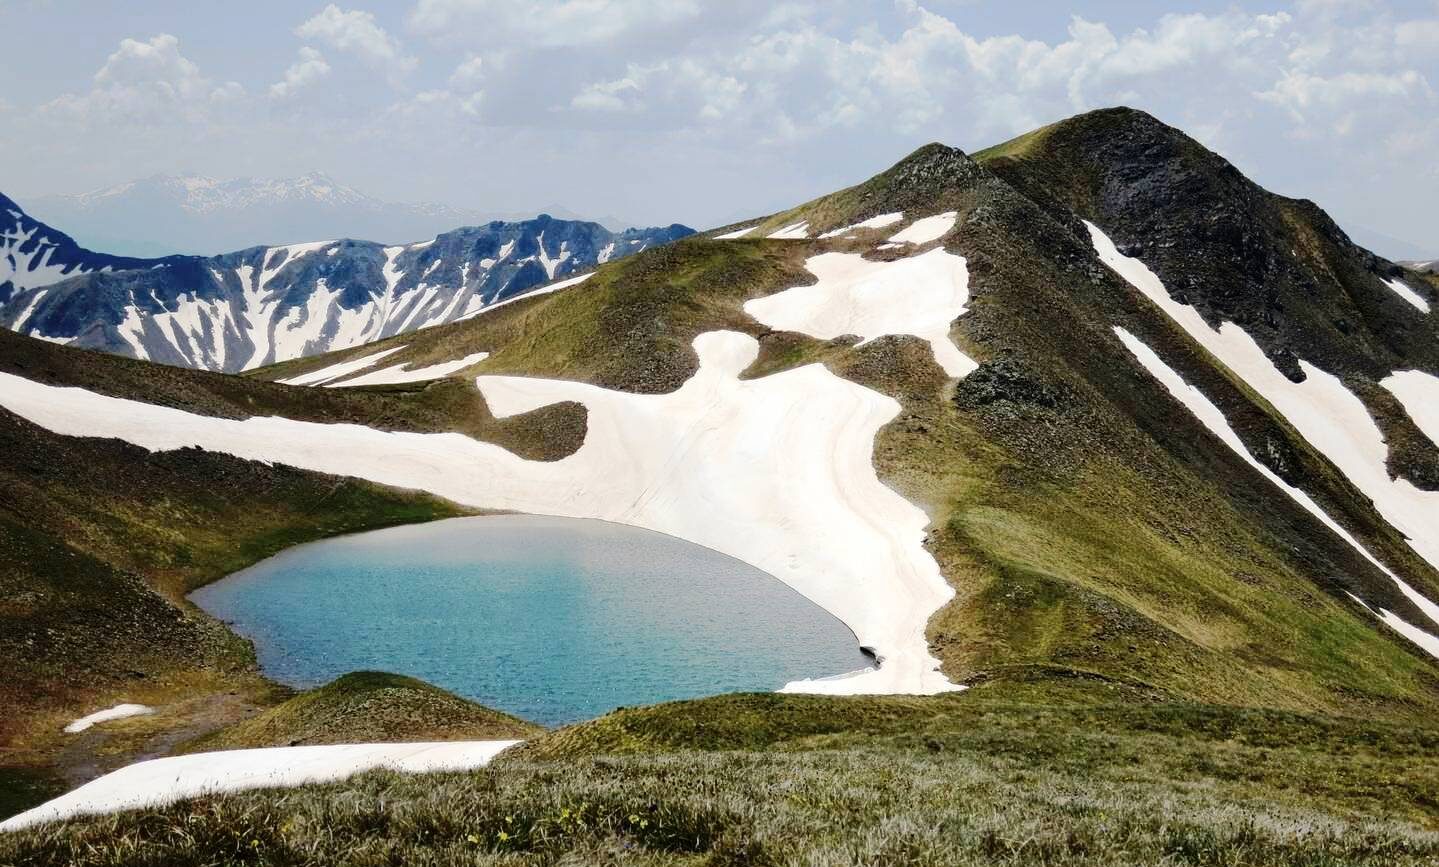 Deep turquoise dragon lake below Grammos snowy peaks